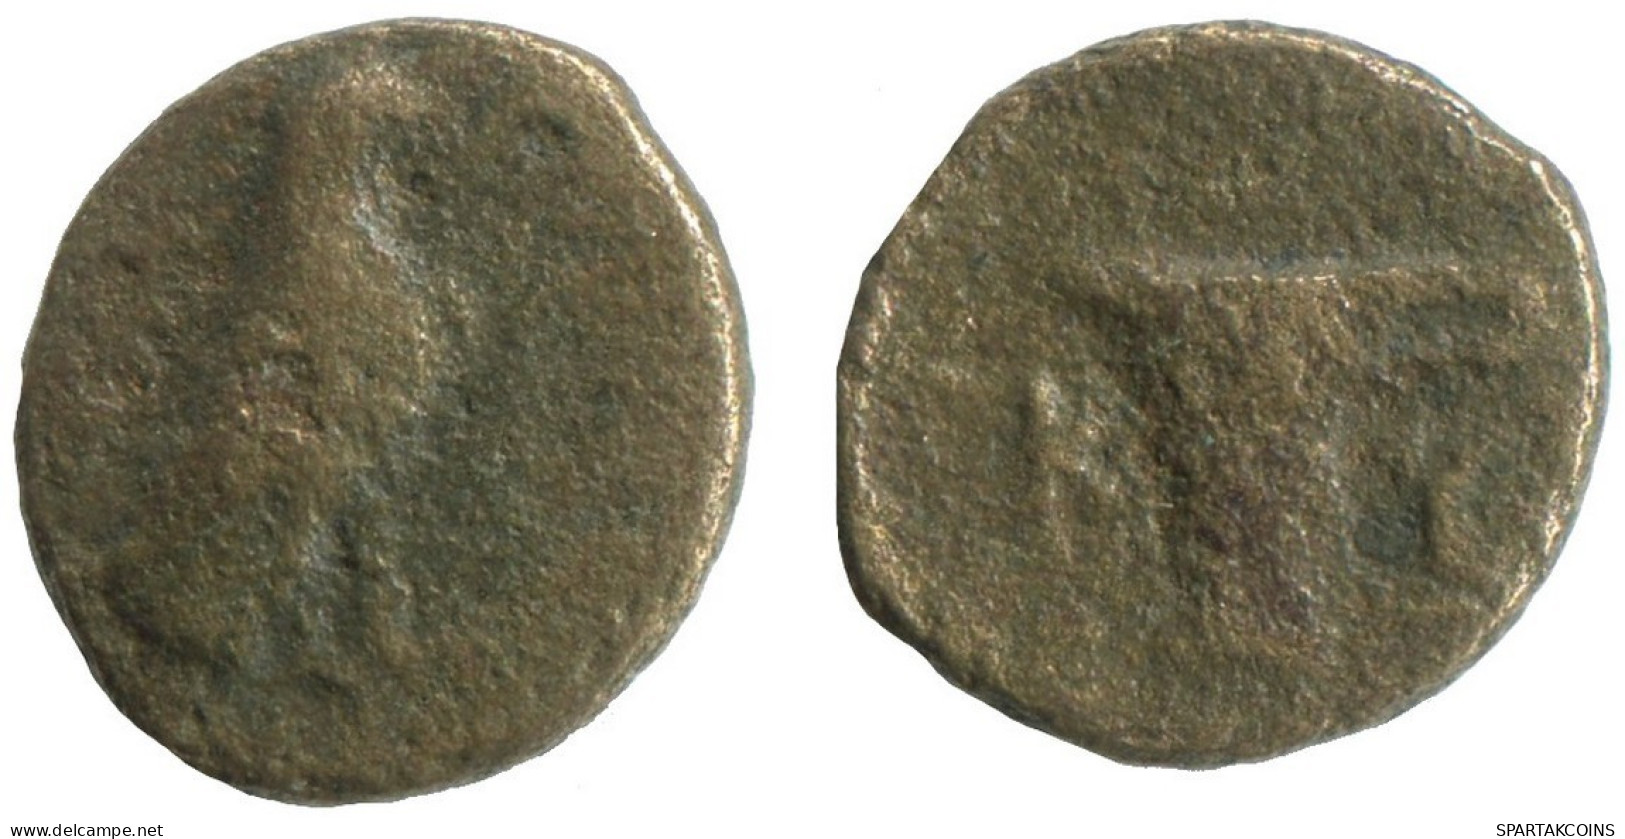 AIOLIS KYME EAGLE SKYPHOS ADLER 1g/12mm #NNN1258.9.E.A - Griechische Münzen